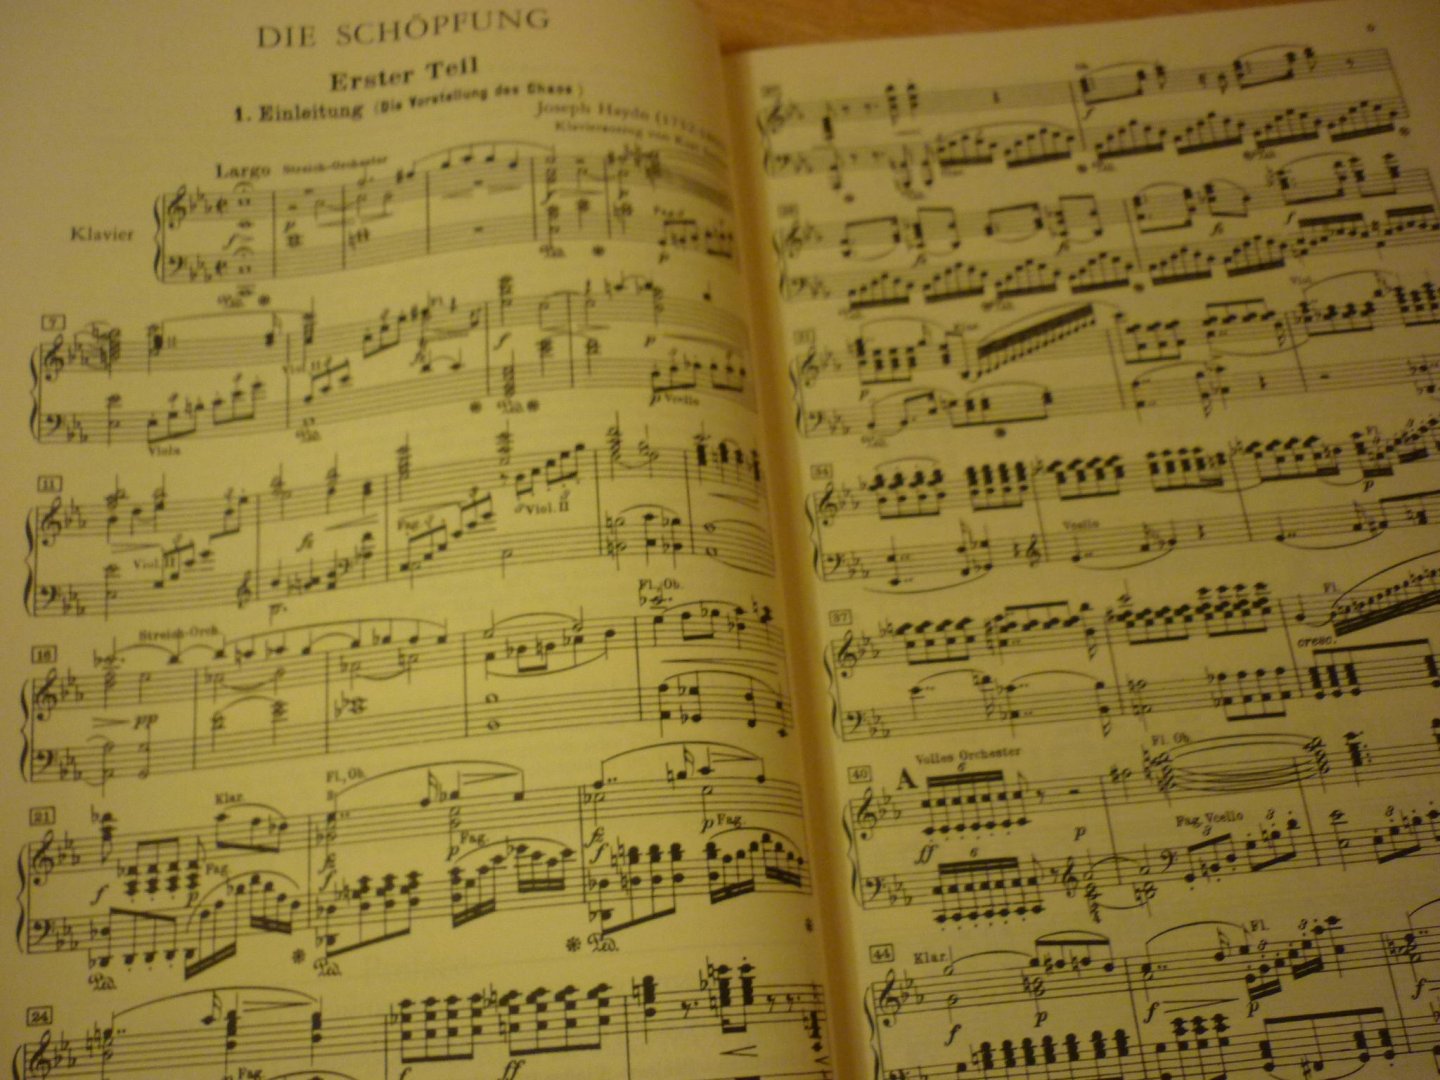 Haydn; Franz Joseph (1732-1809) - Die Schopfung; Oratorium; Soli, Chor und Orchester; Klavierauszug